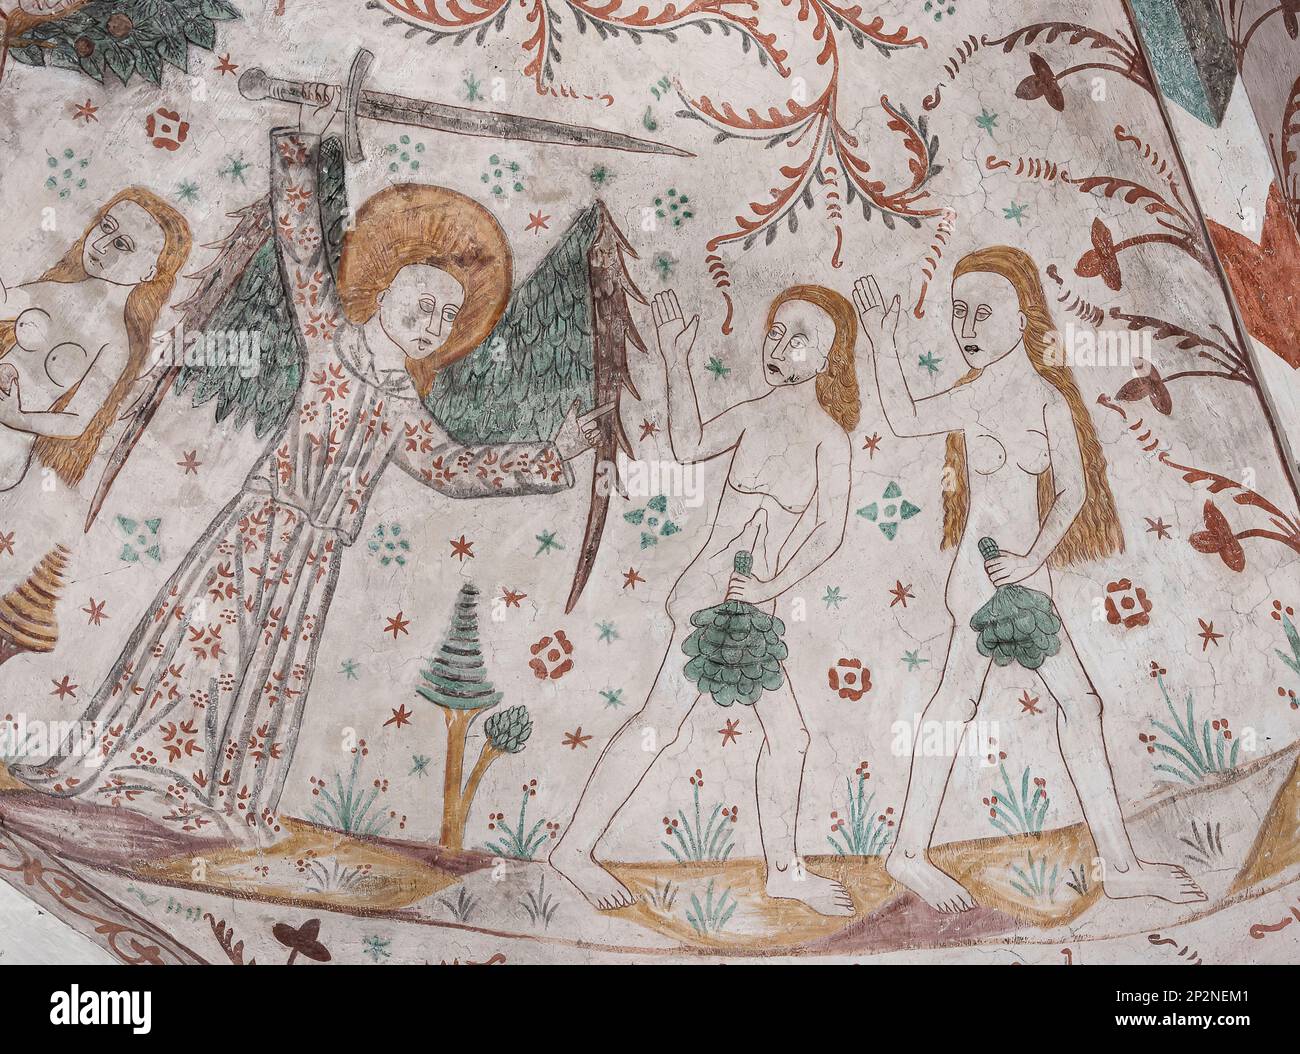 Espulsione di Adamo ed Eva dal Giardino dell'Eden, un affresco di 500 anni nella chiesa di Keldby, Danimarca, 10 ottobre 2022 Foto Stock